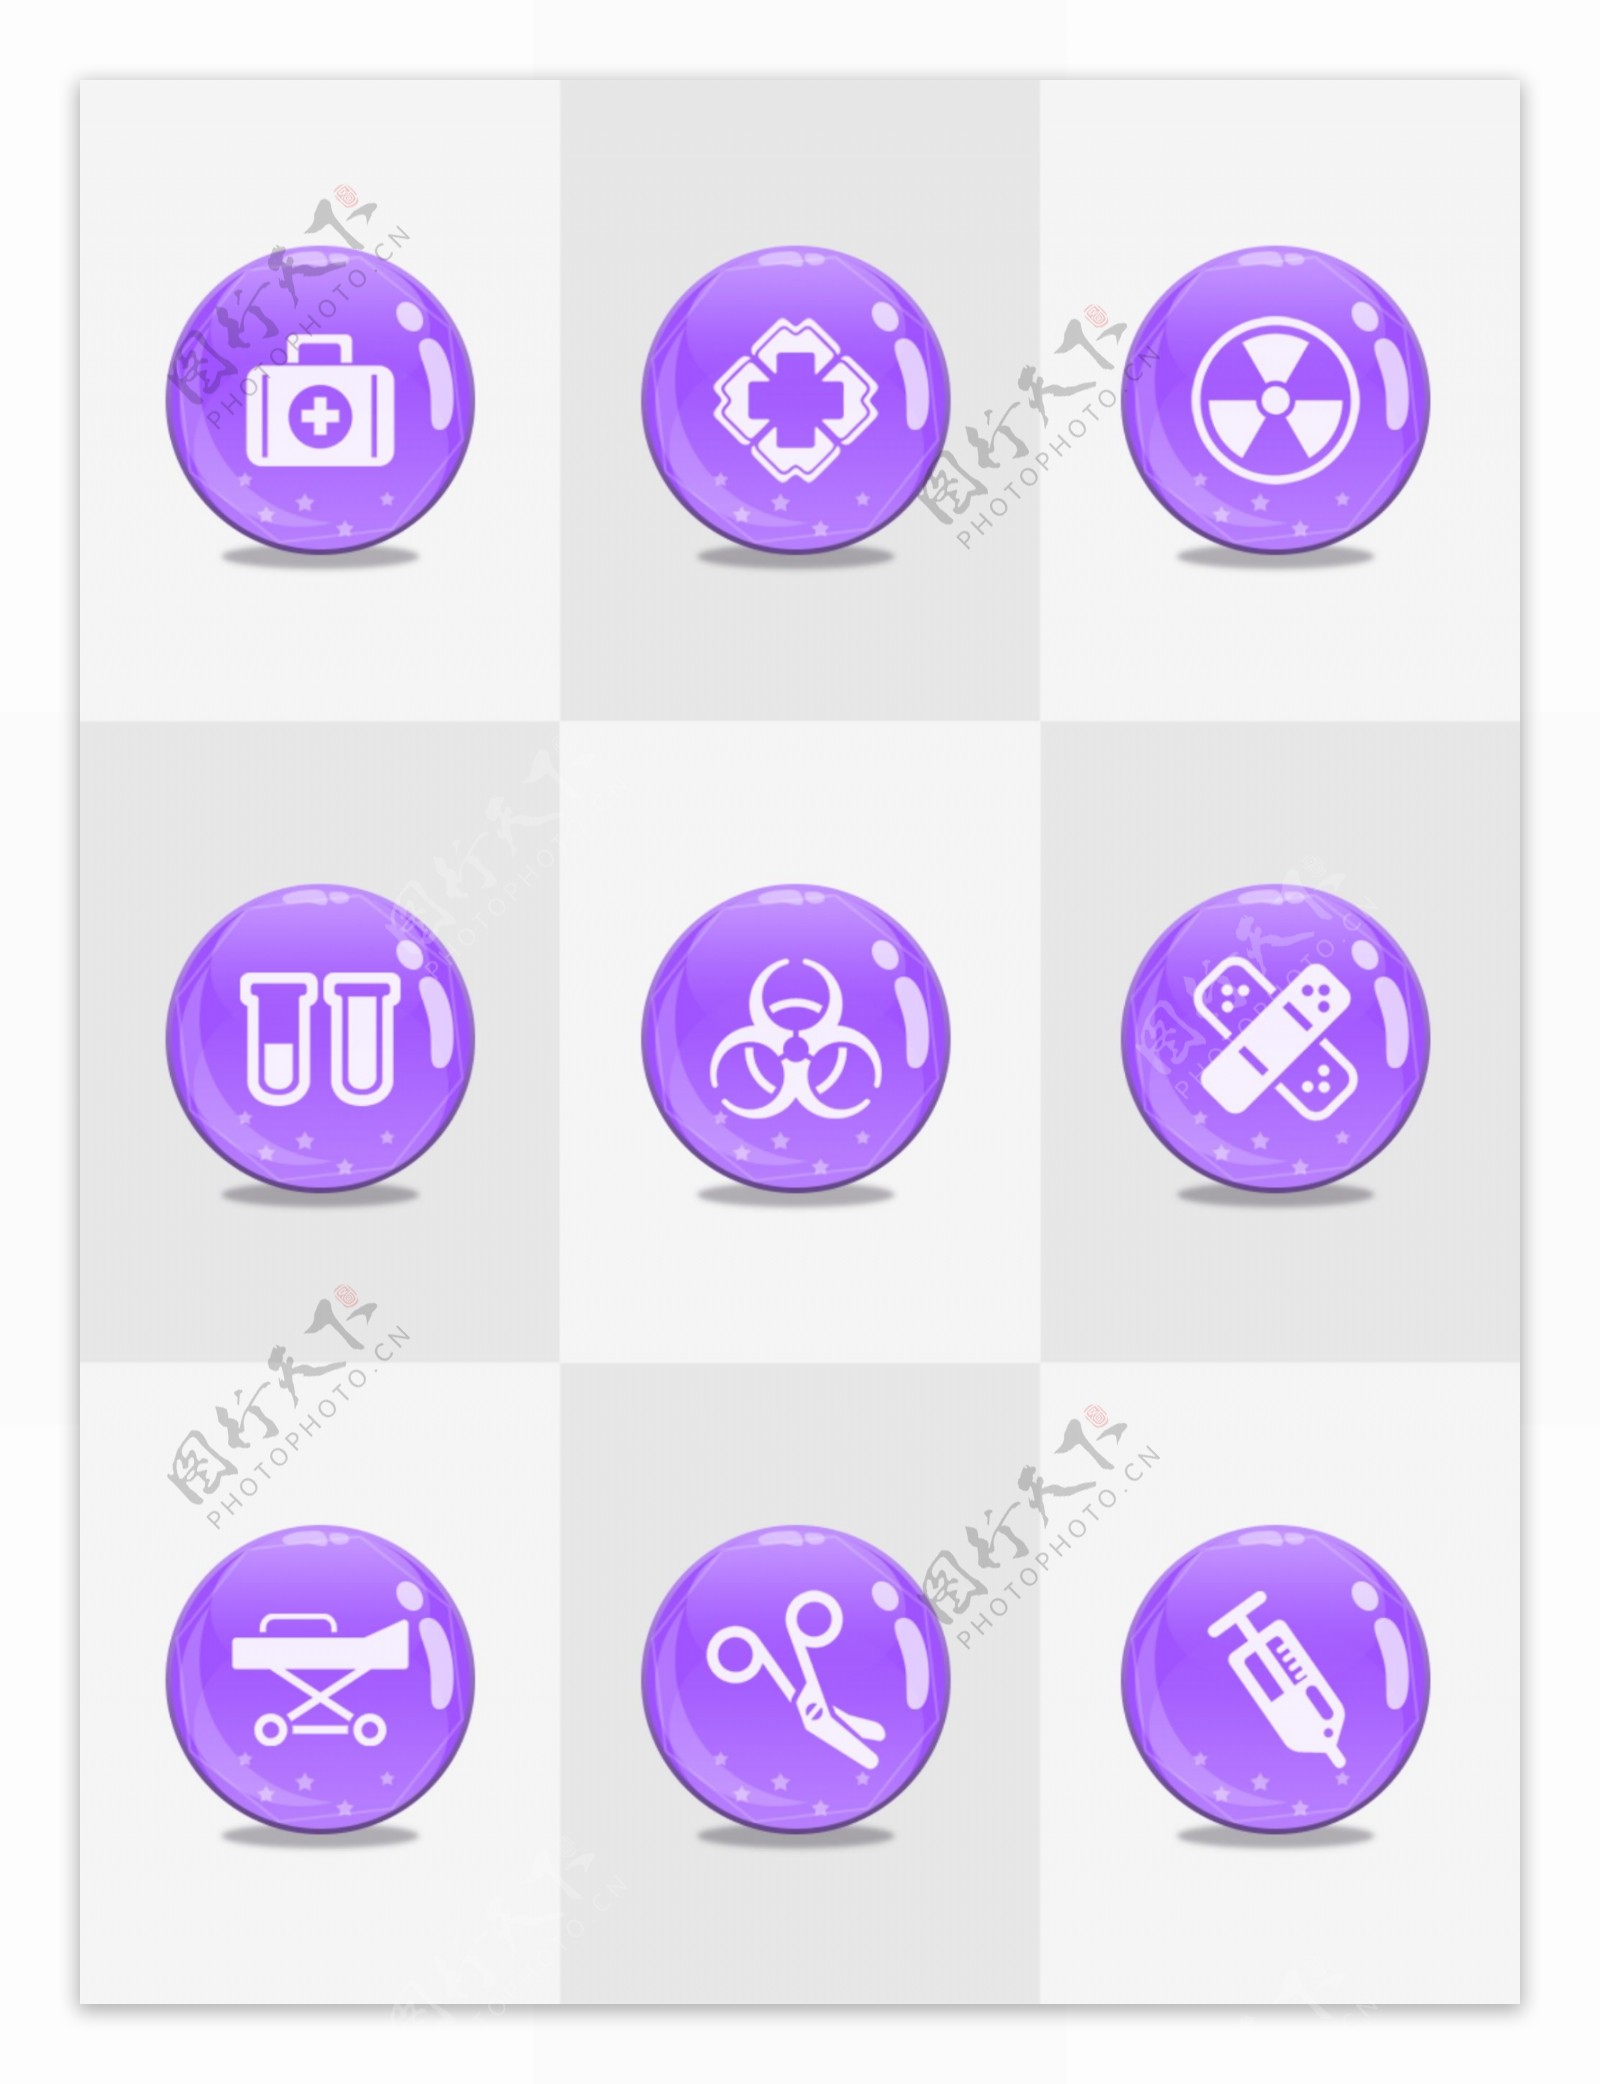 原创医疗图标icon简洁紫色清爽风格